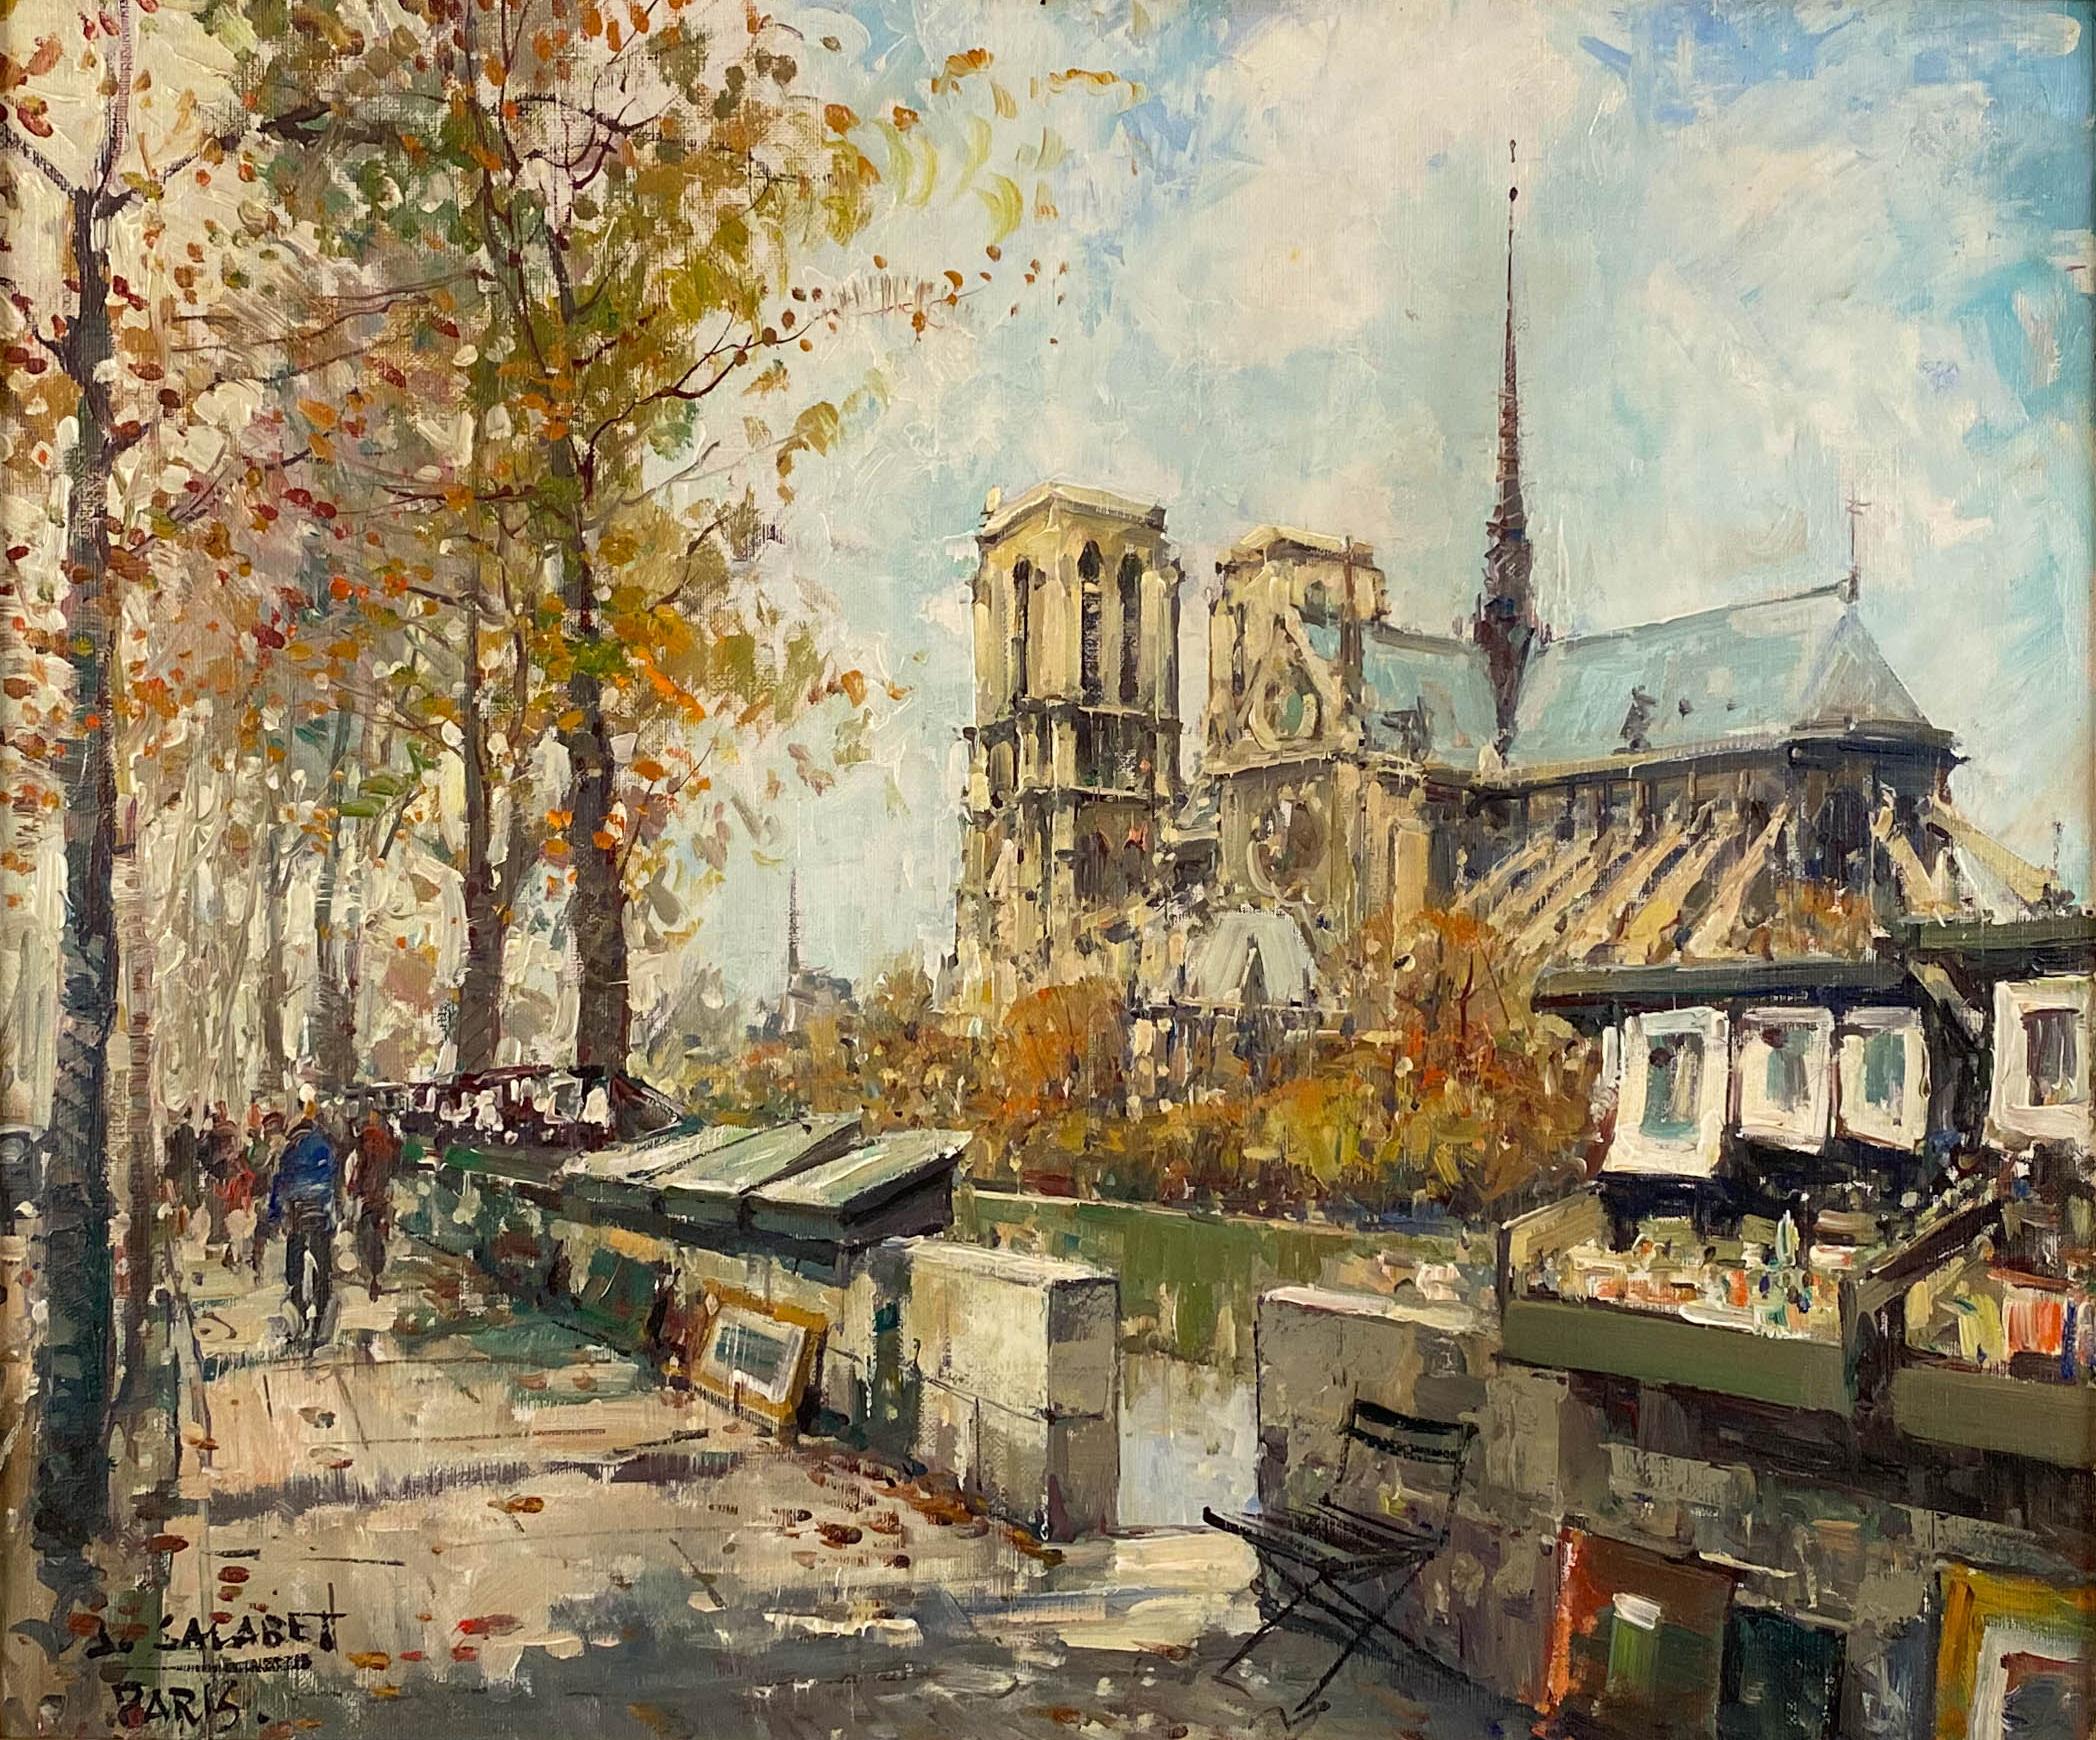 Notre Dame. Rive gauche, Paris - Painting by Jean Salabet